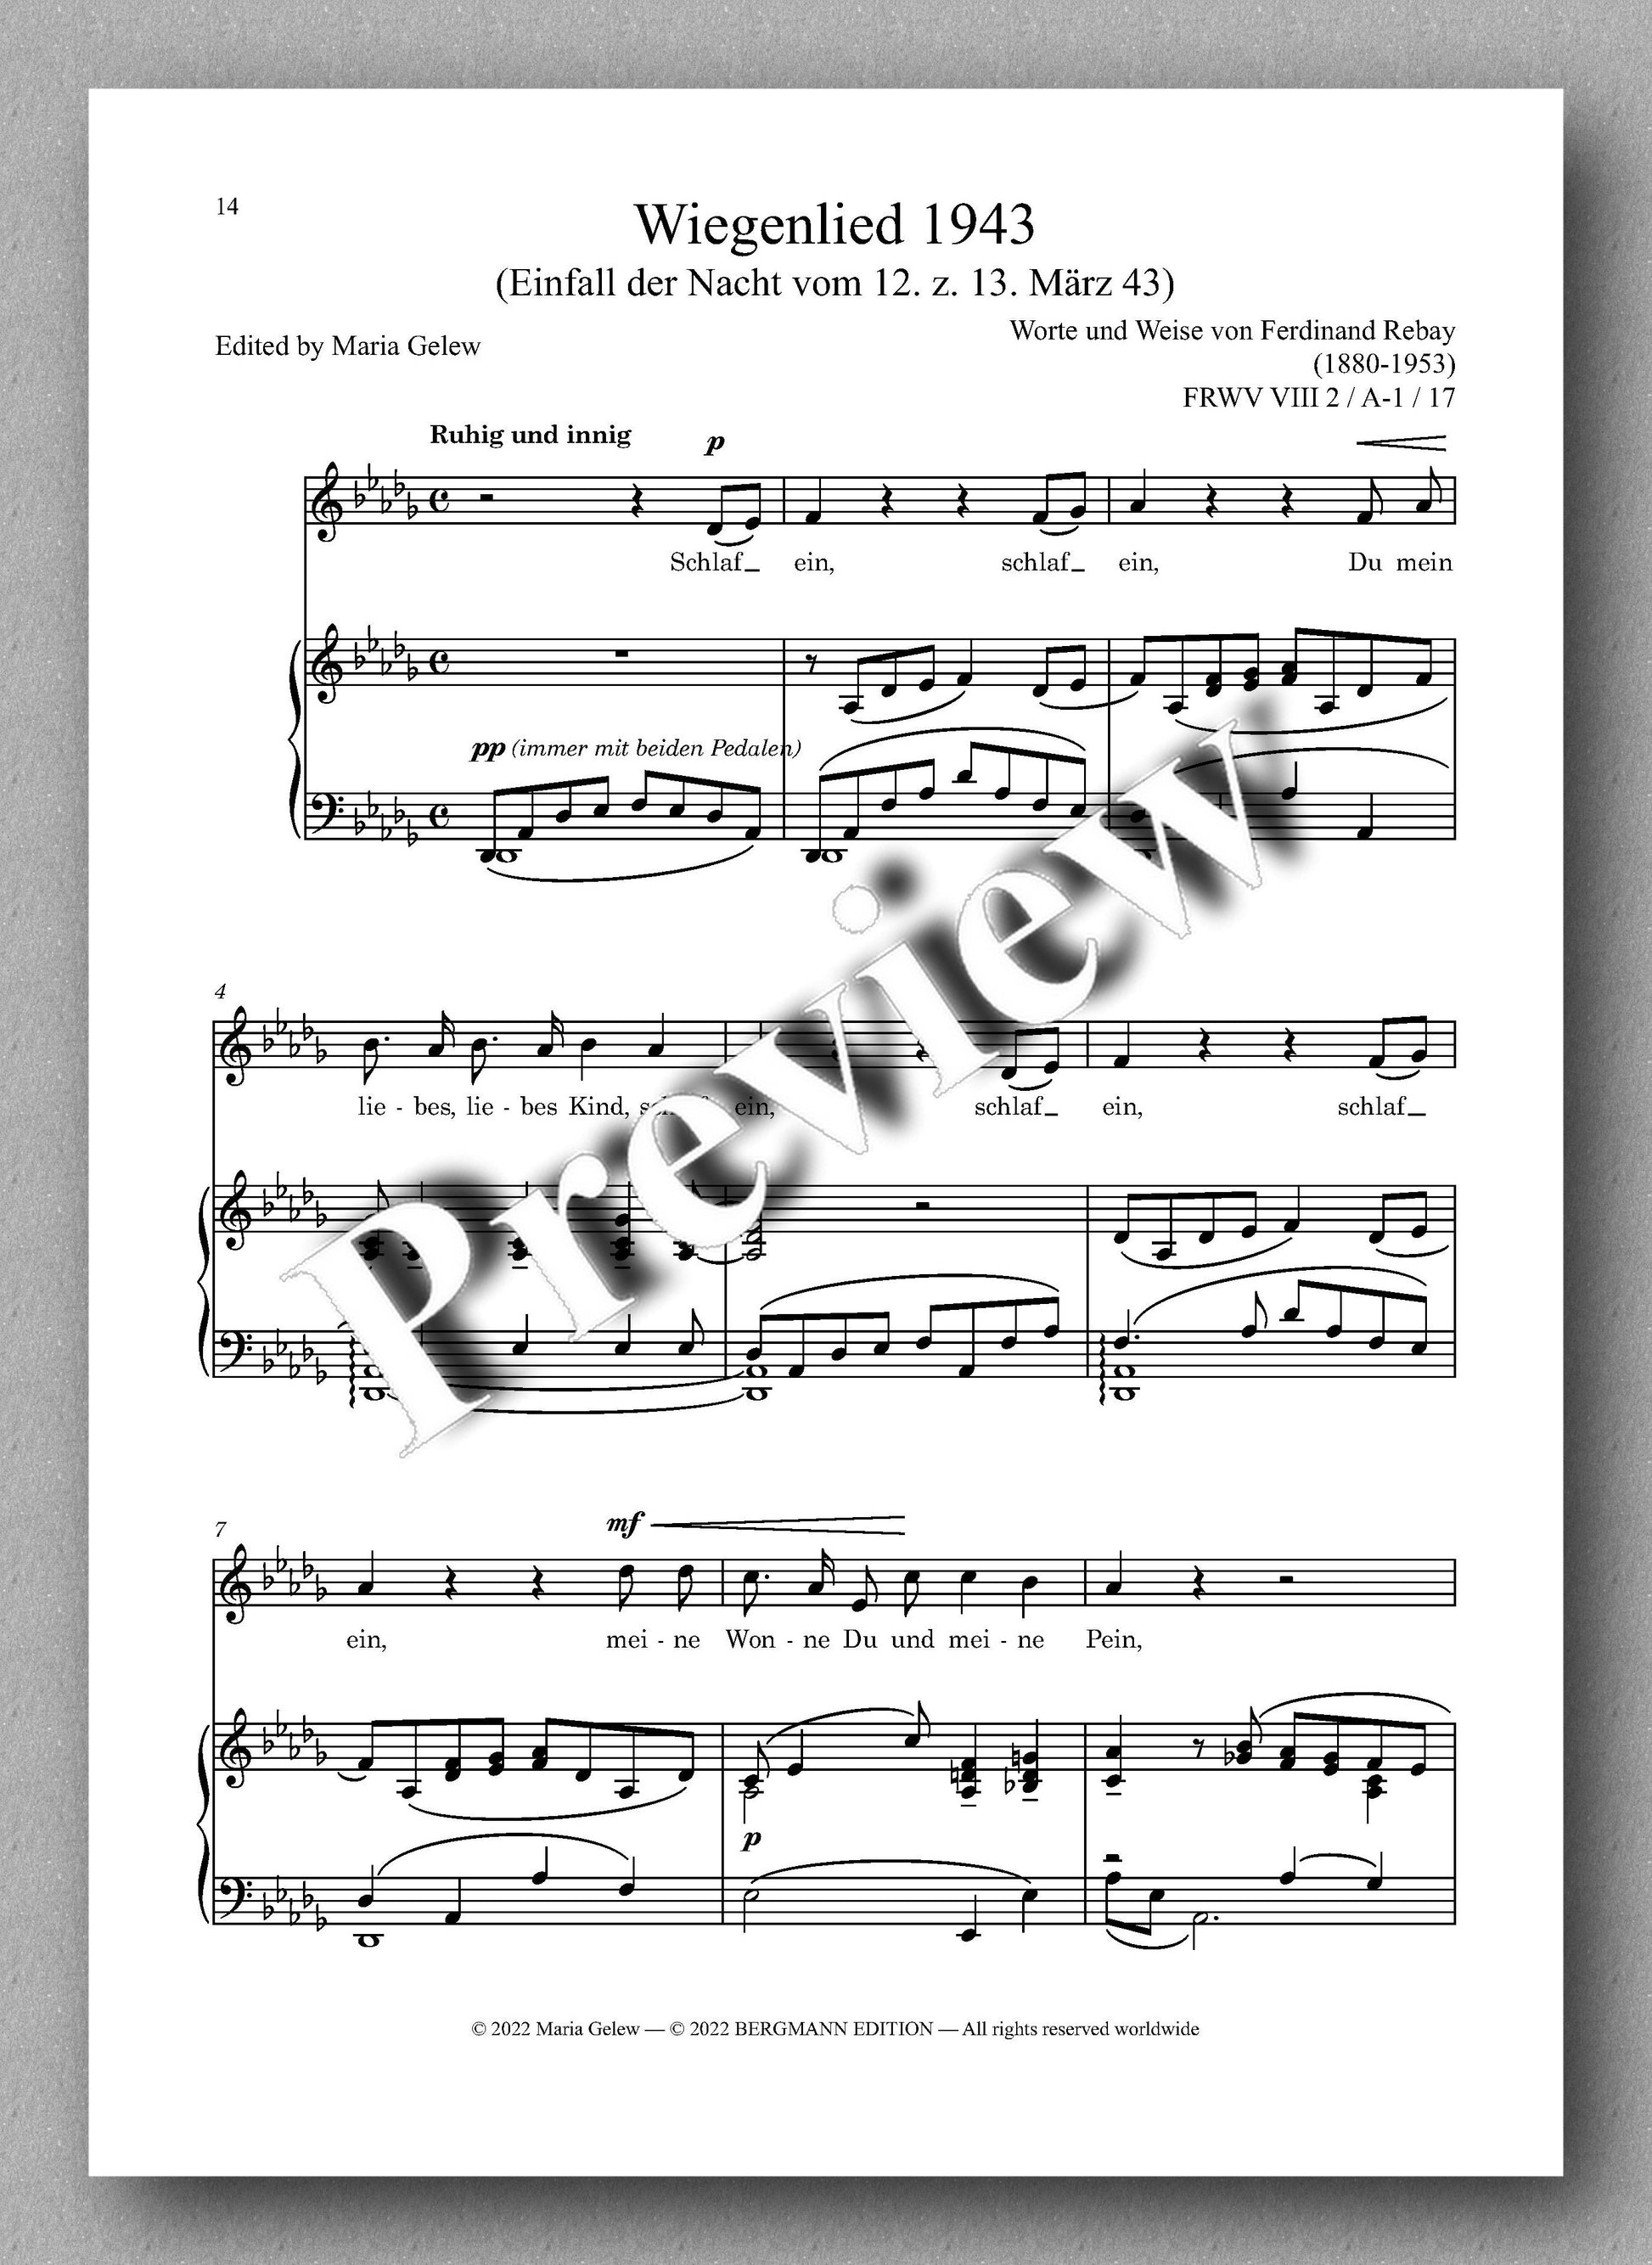 Ferdinand Rebay, Lieder nach eigenen Texten (1930-1950) - preview of the Music score 2